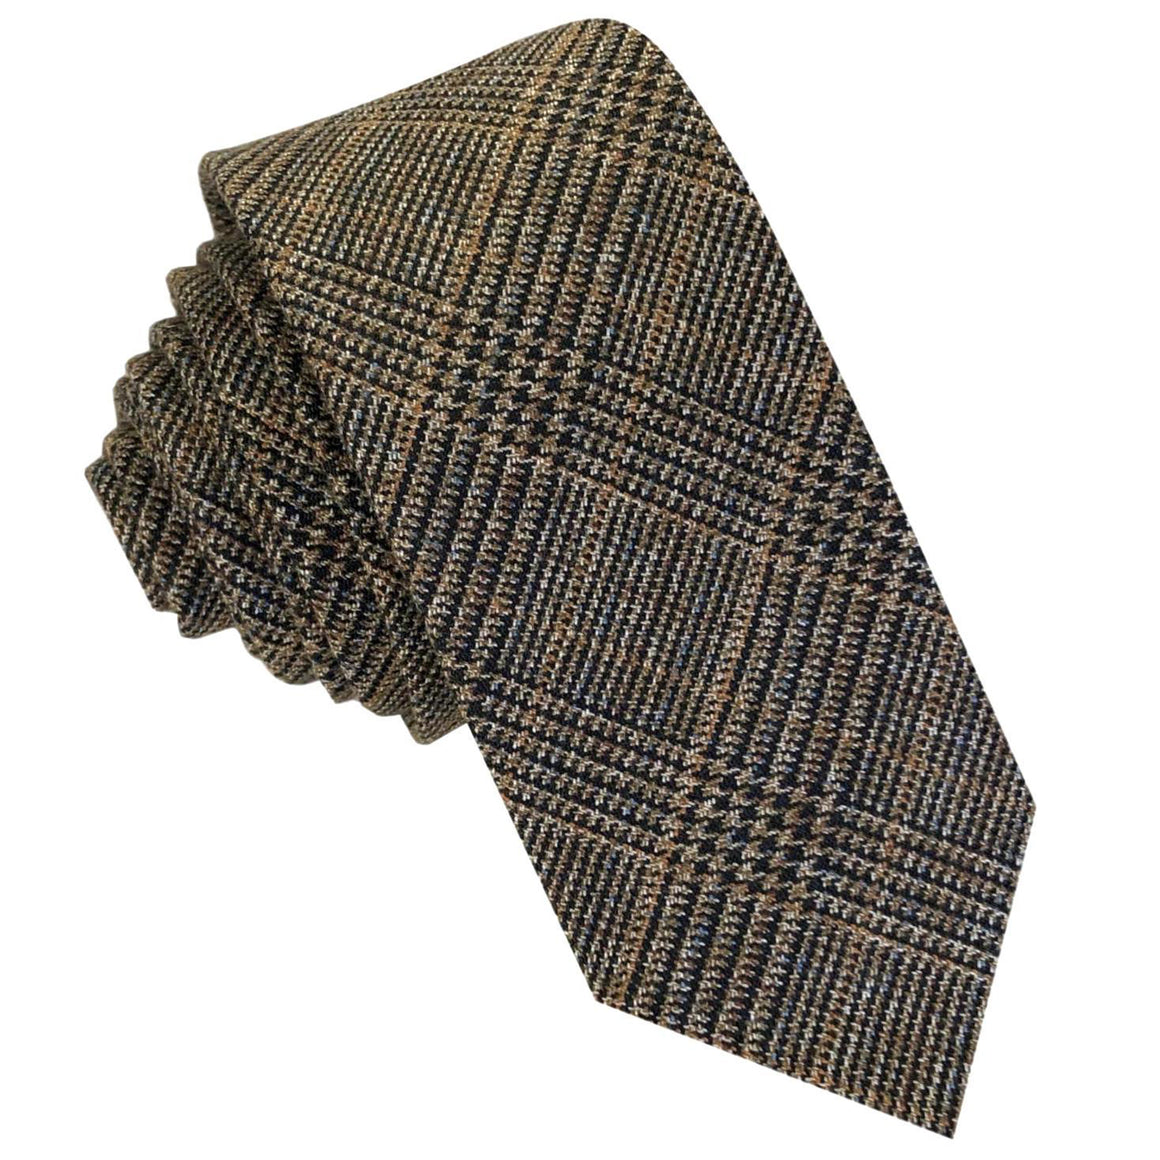 GASSANI 6 cm úzká béžovohnědá vintage vlněná kravata, pánská kravata kravata vlněná kostkovaná